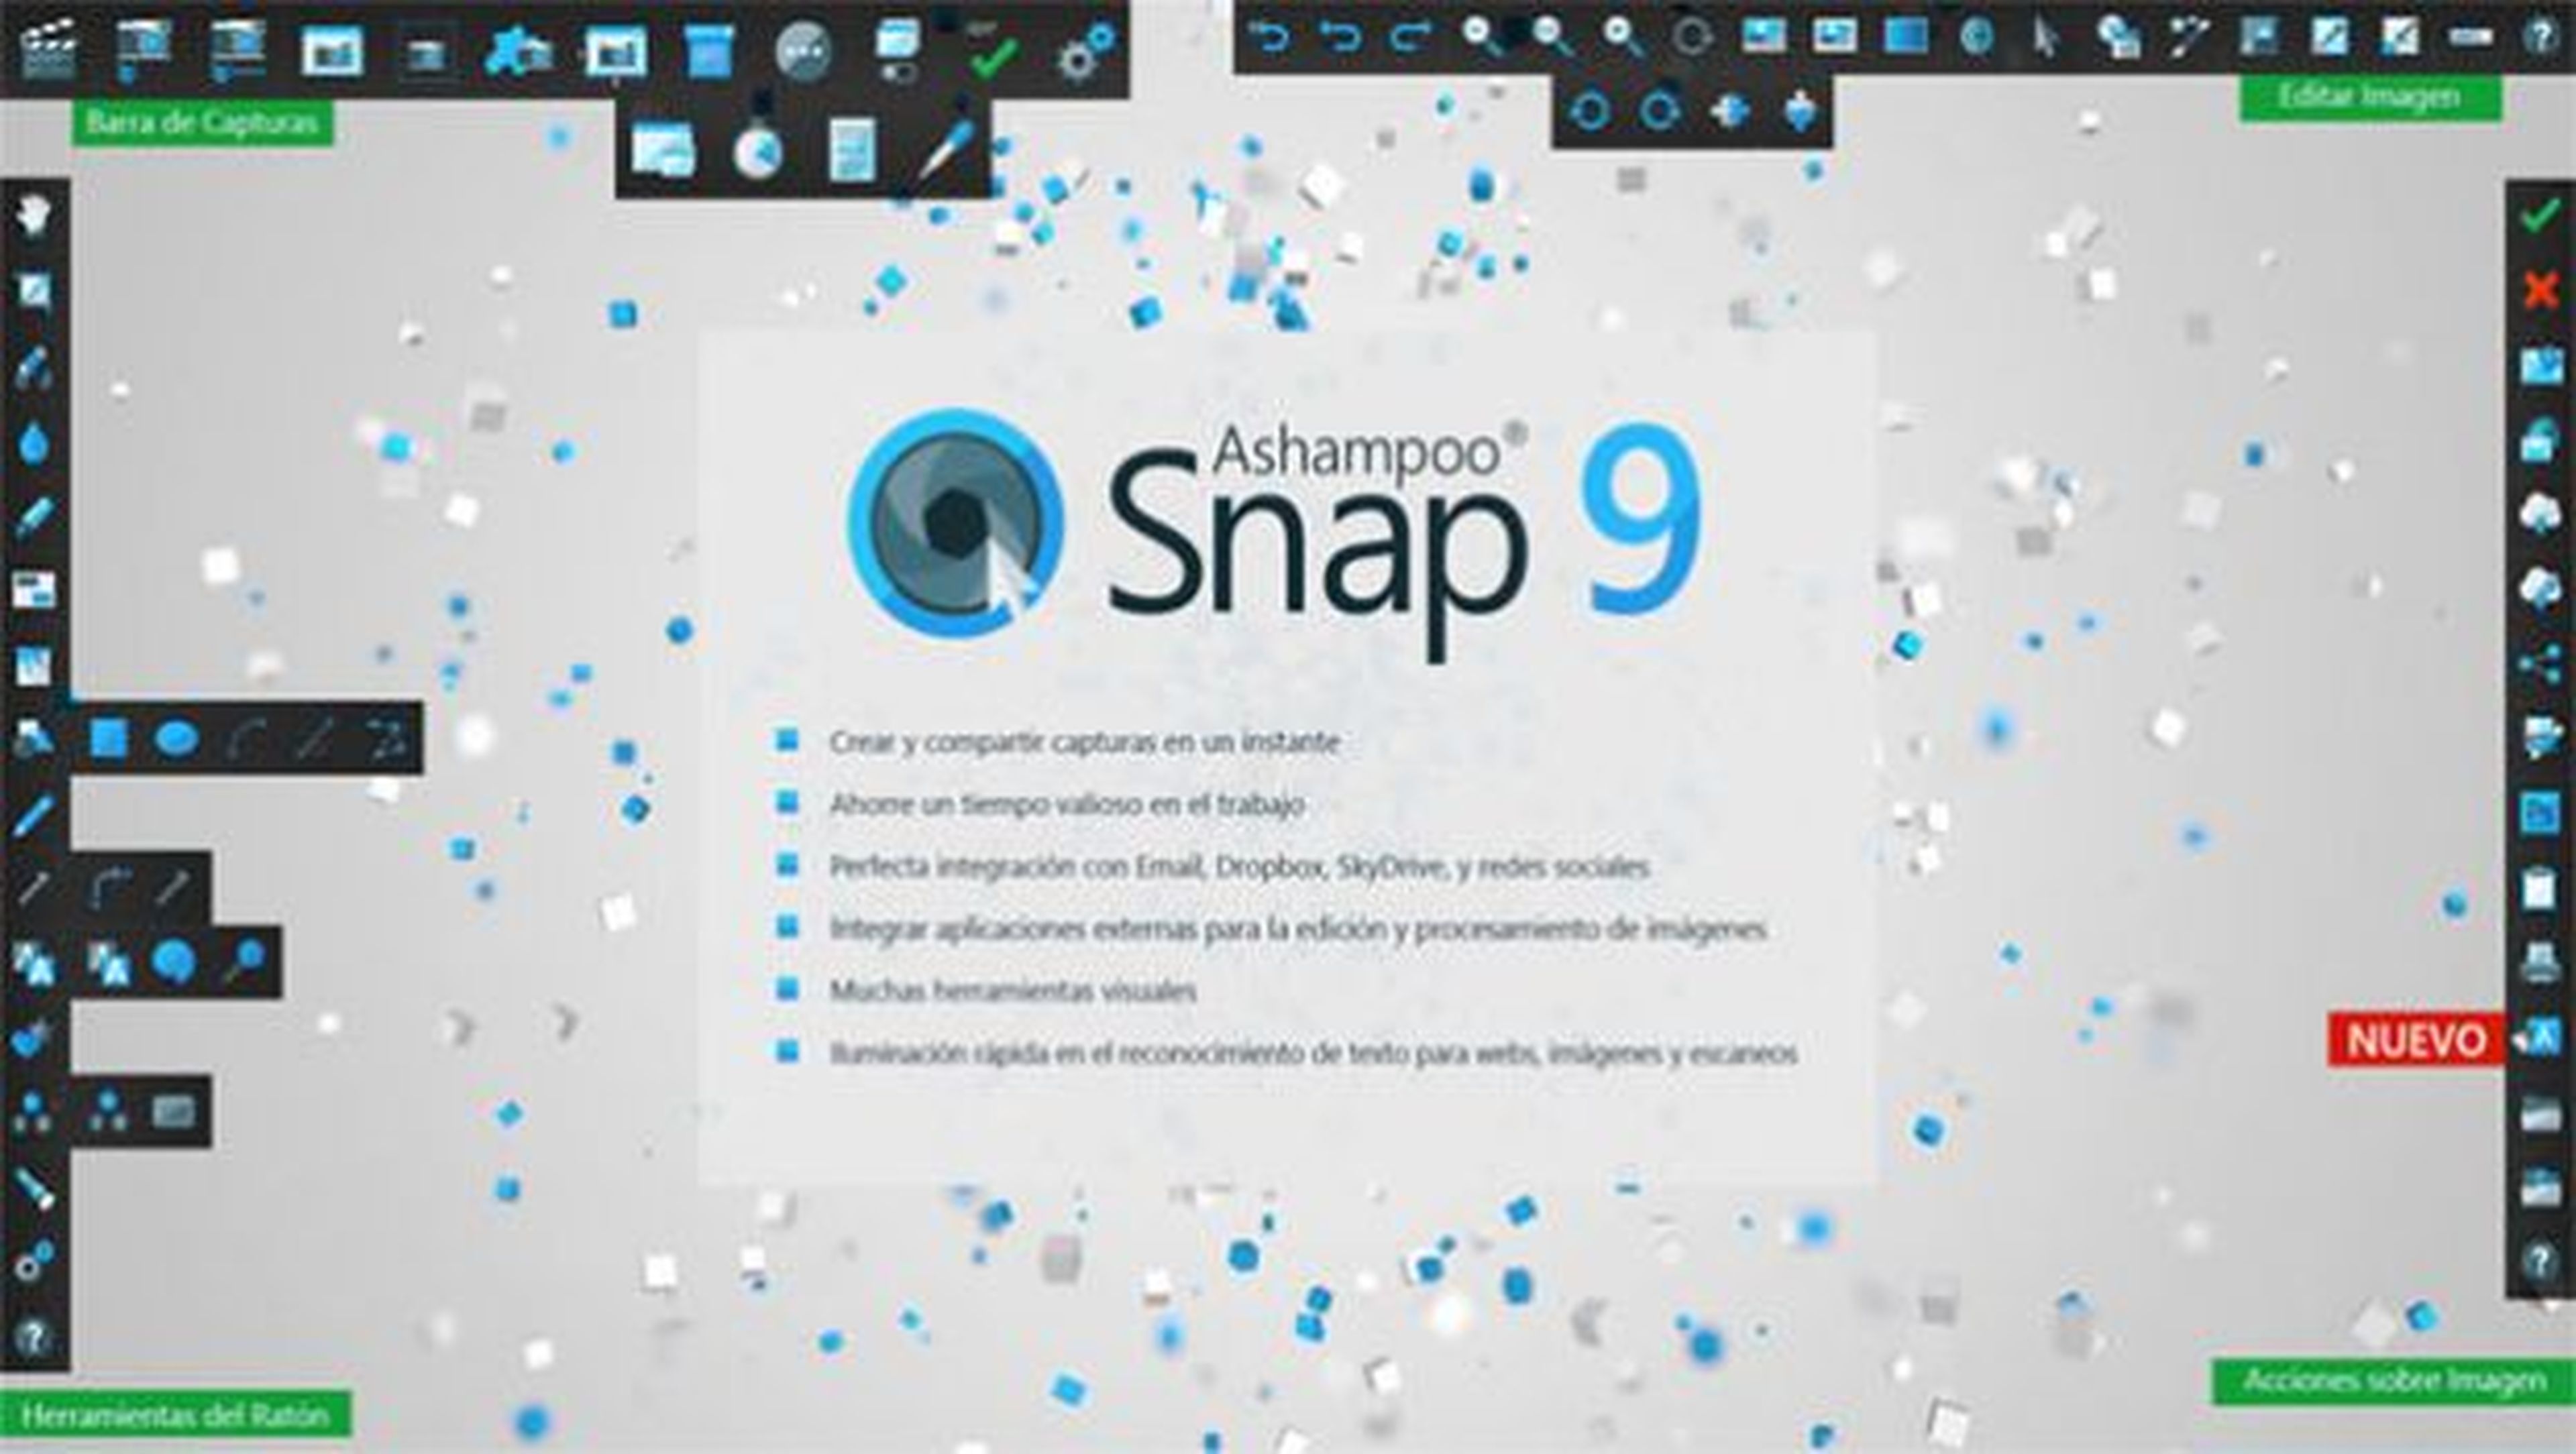 La nueva versión de Ashampoo Snap 9 incluye numerosas funciones y formas de capturar tu pantalla.